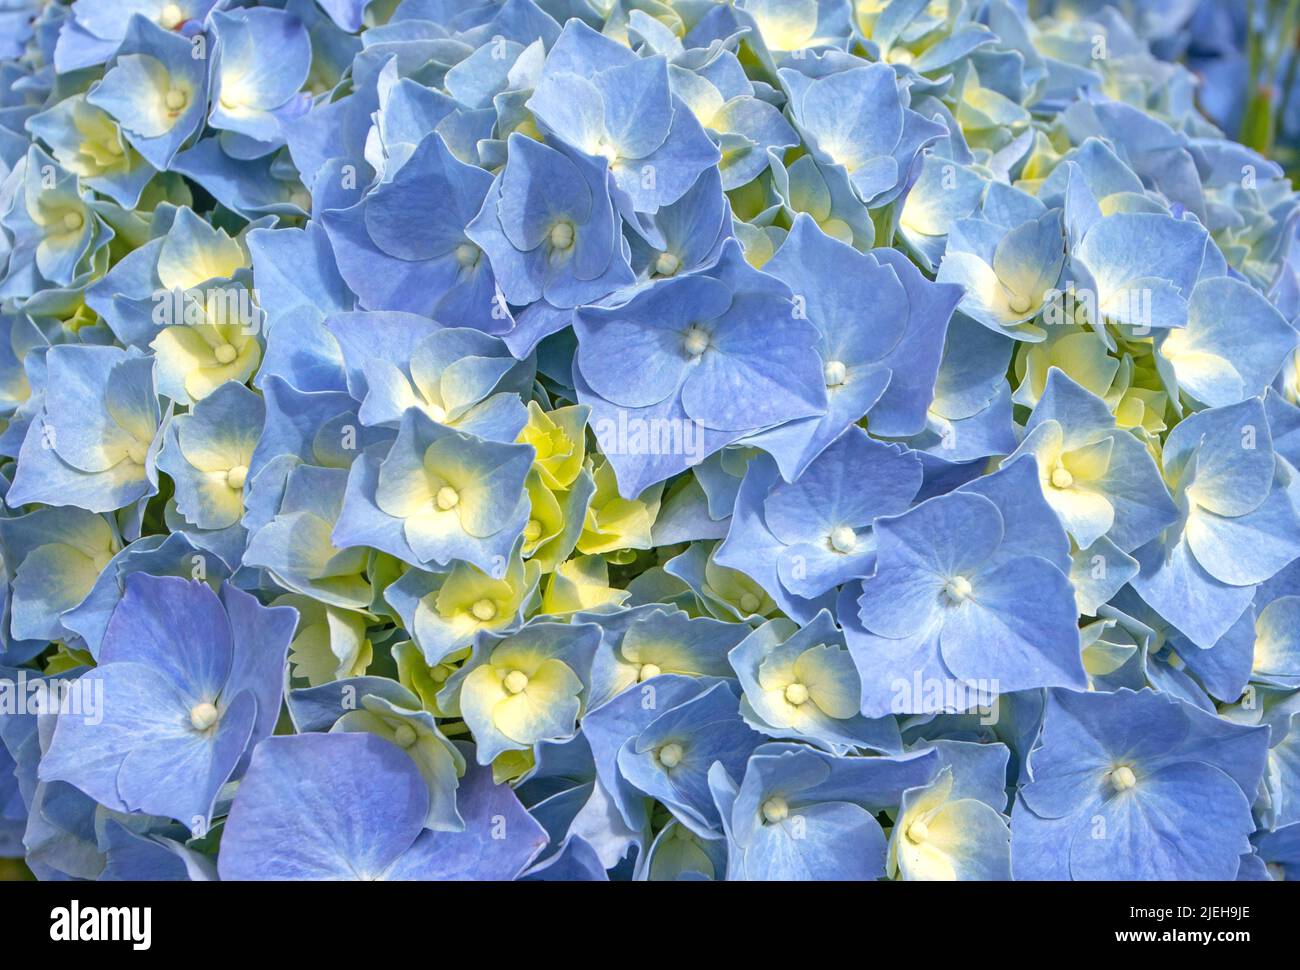 Flores macrophylla de hortensias azules y fondo amarillo de los brotes. Espectacular planta de flores hortensia. Foto de stock